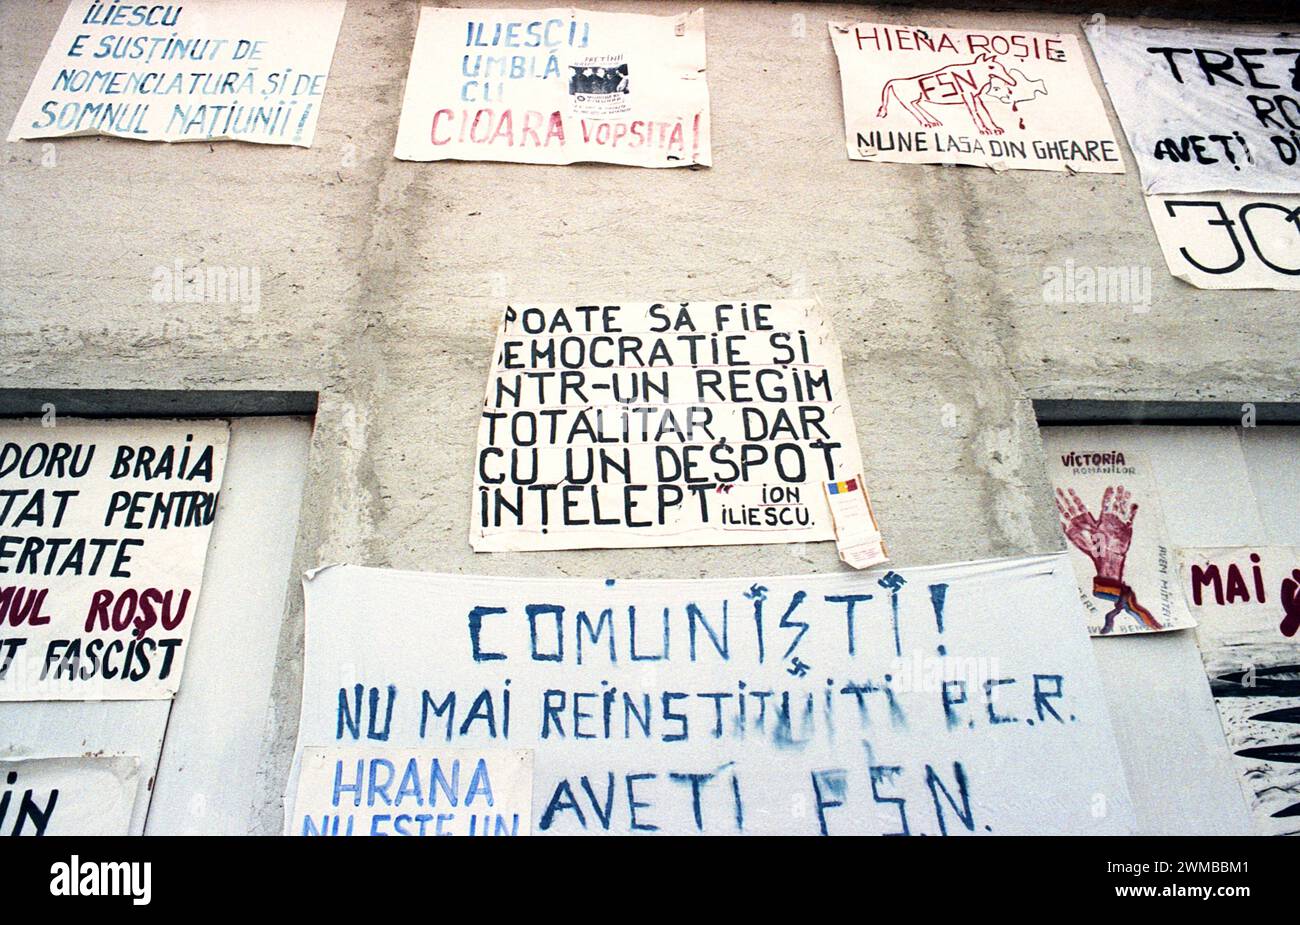 Brasov, Romania, aprile 1990. A seguito della rivoluzione anti-comunista del 1989, sono scoppiate proteste in tutto il paese contro gli ex funzionari comunisti che hanno immediatamente afferrato il potere. Nella piazza centrale di Brasov, manifesti e striscioni hanno condannato il nuovo partito al potere, F.S.N. Foto Stock